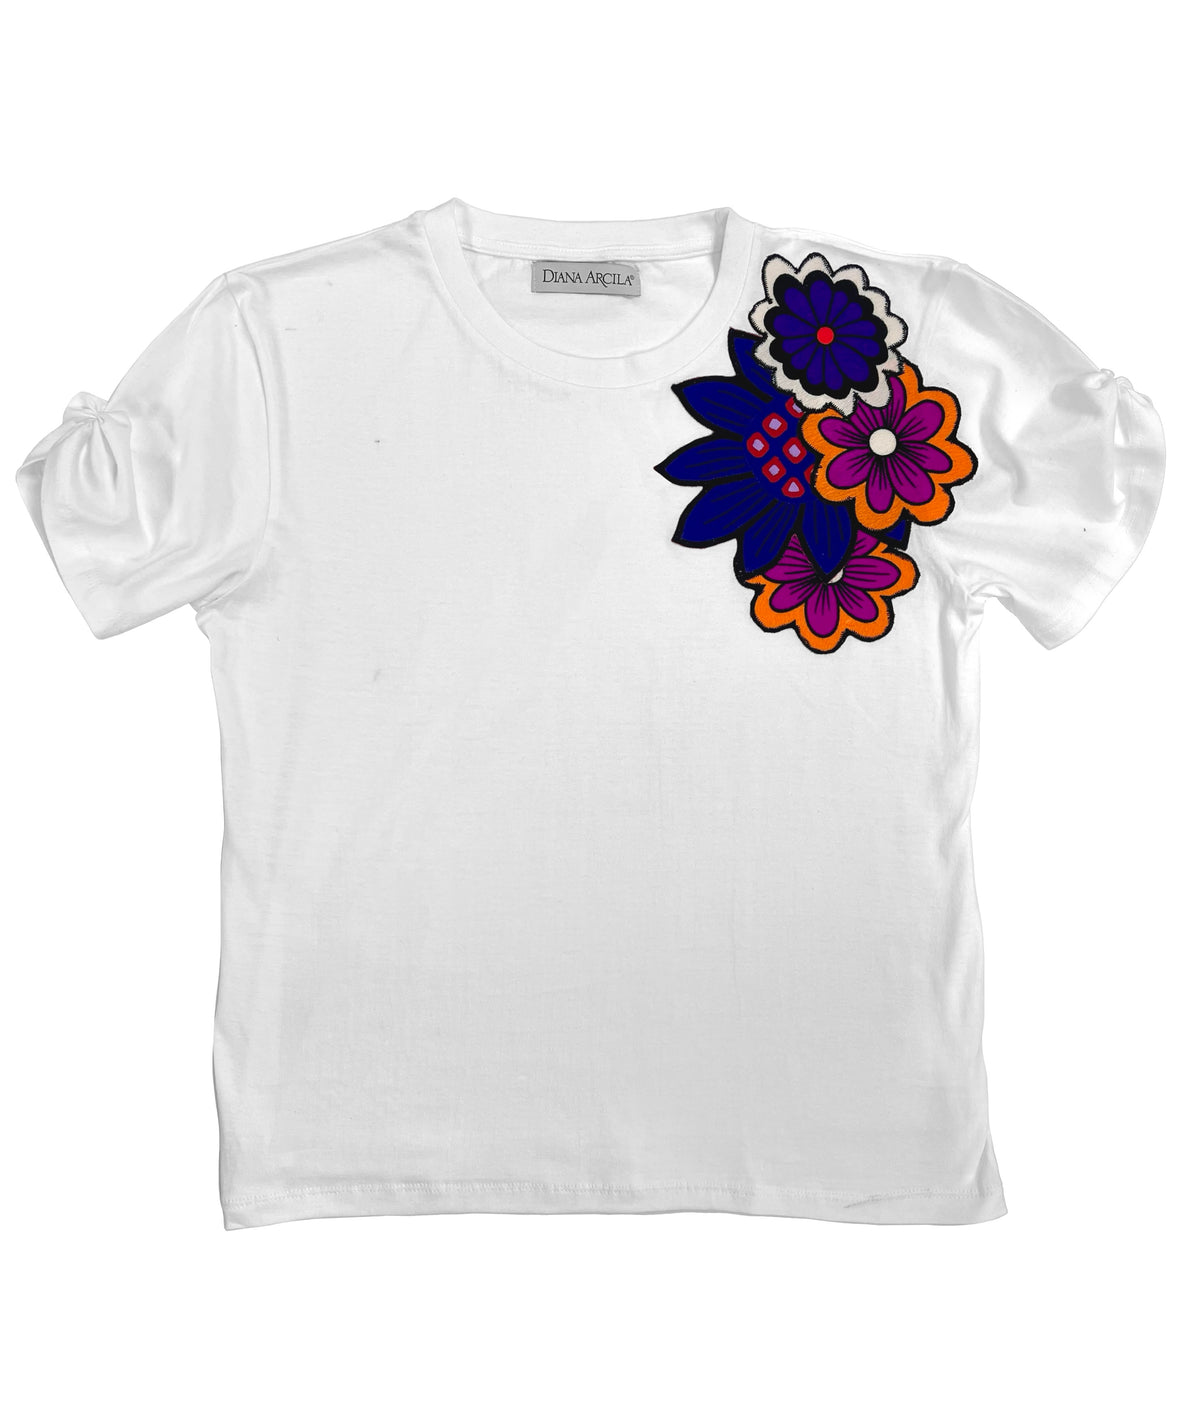 Florecer t-shirt